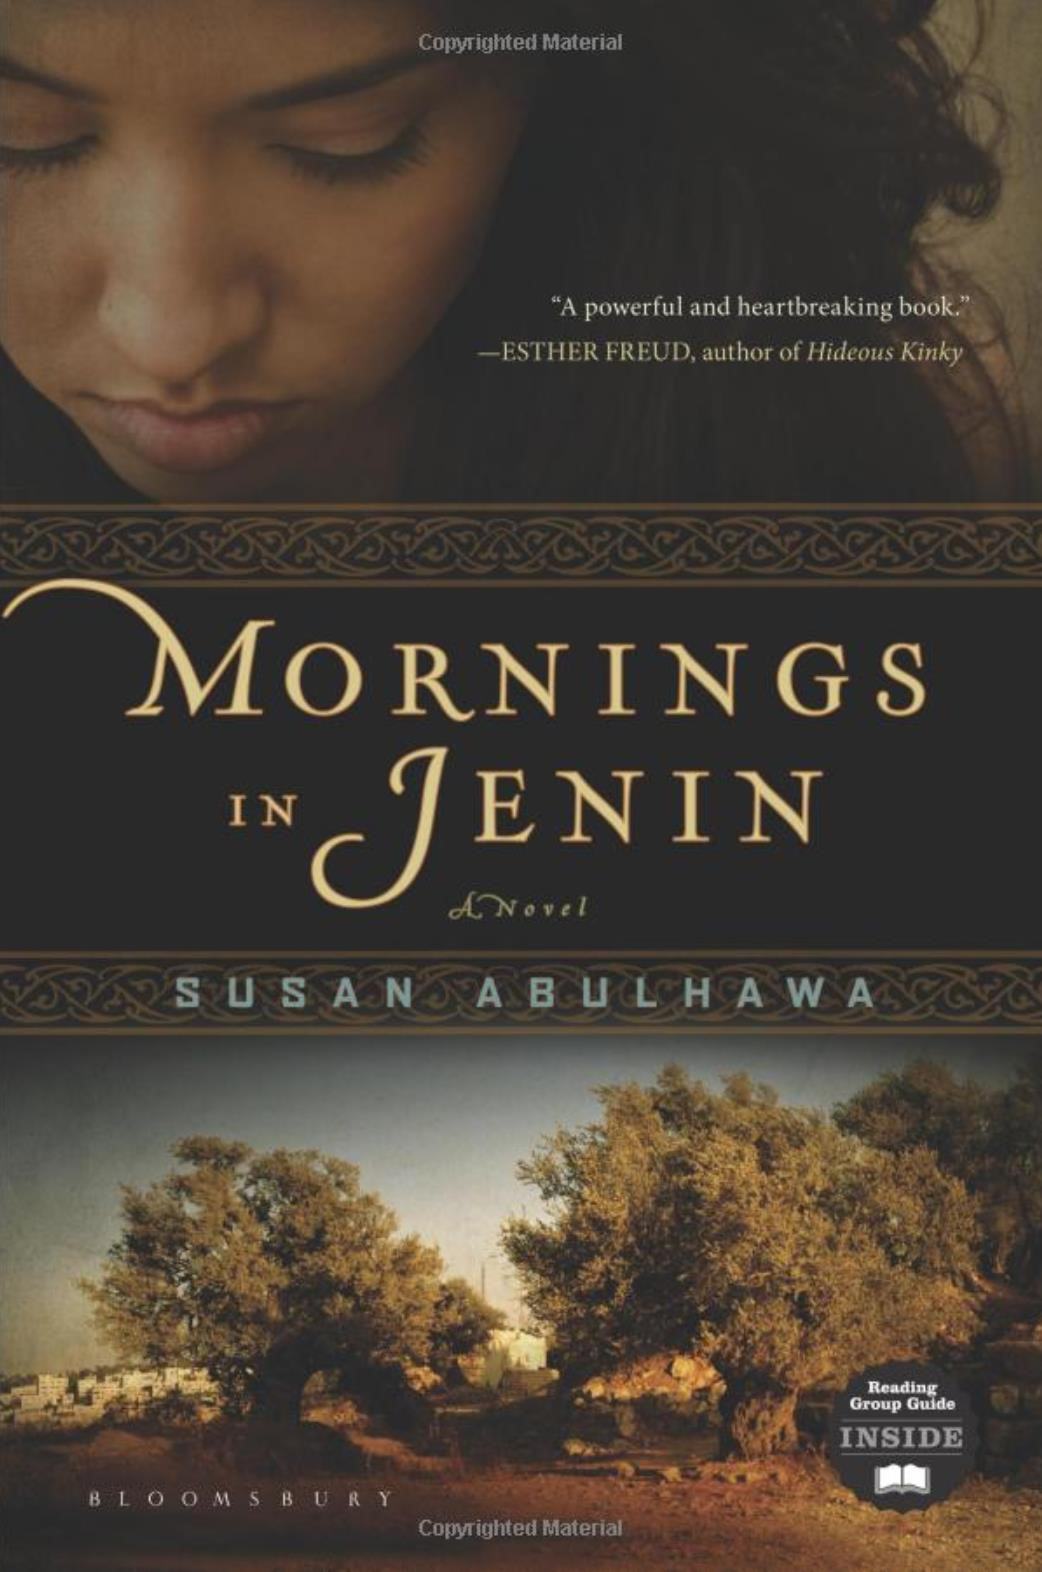 Türkçe'ye 'Filistin Sabahları' diye çevirilen, Abdulhawa'nın yazmış olduğu Morning in Jenin adlı kitap.